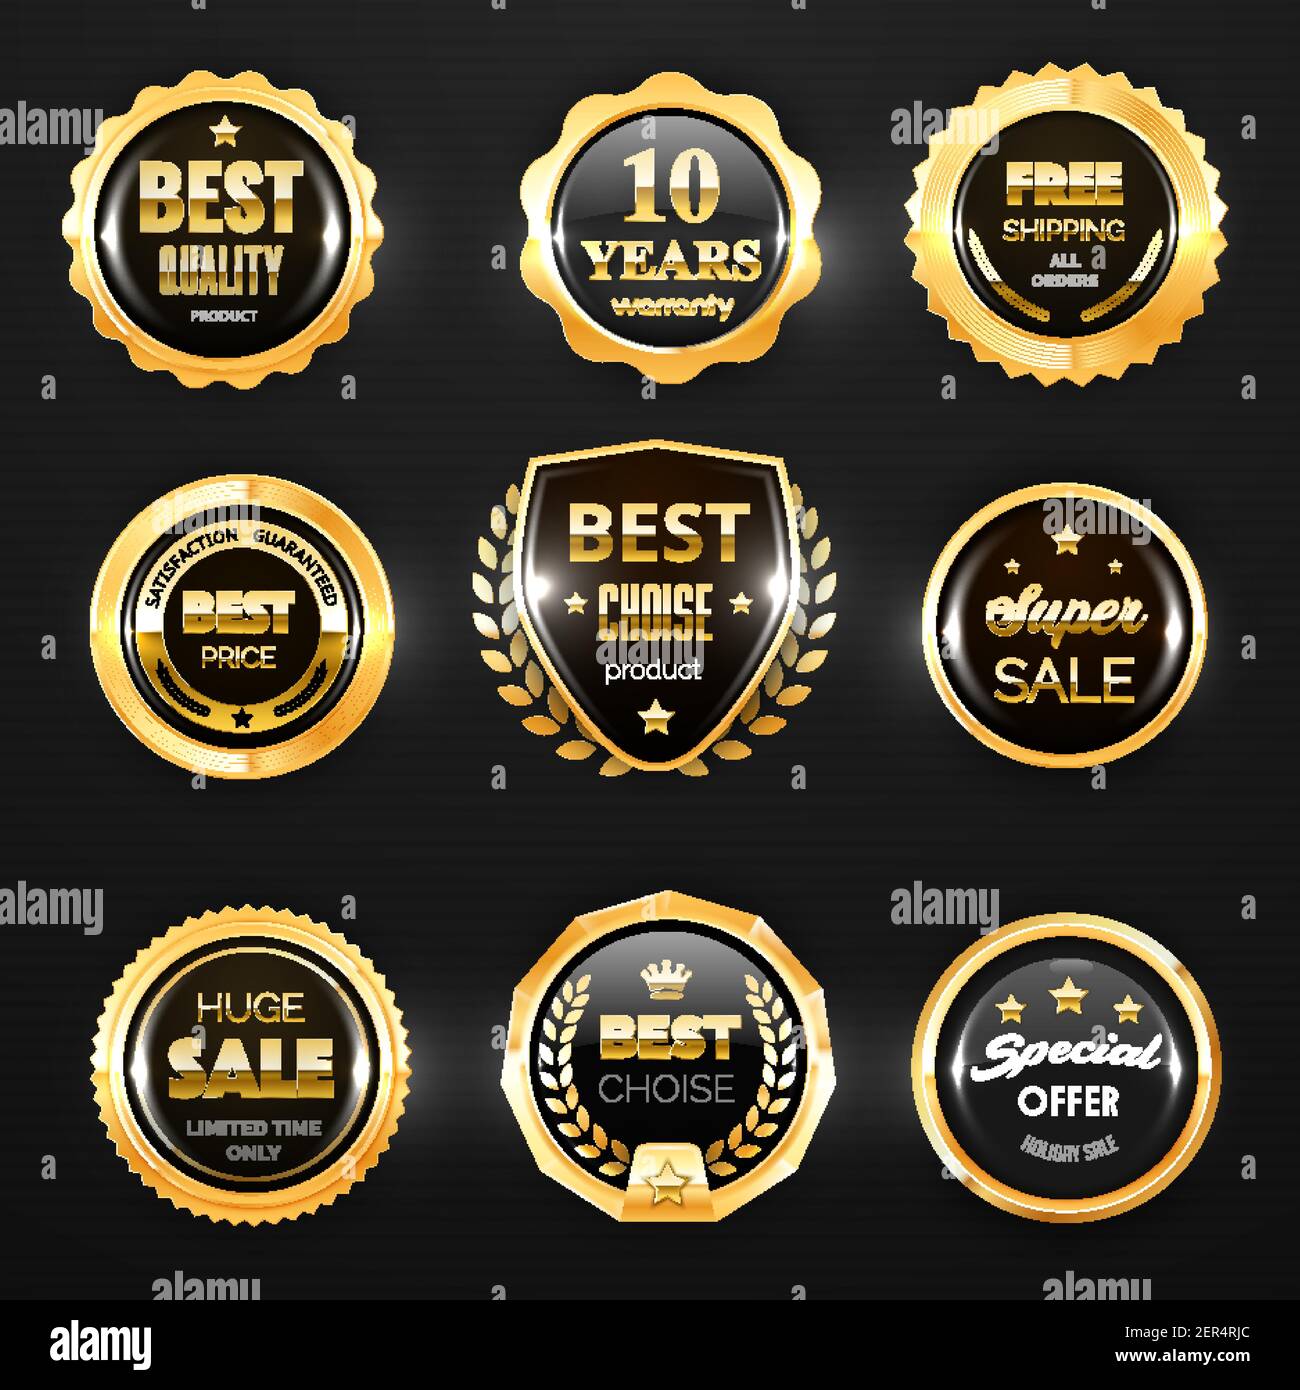 Premium Vector  Best seller gold label. for logo design, icon, seal, tag,  badge, sticker, emblem, symbol, etc.